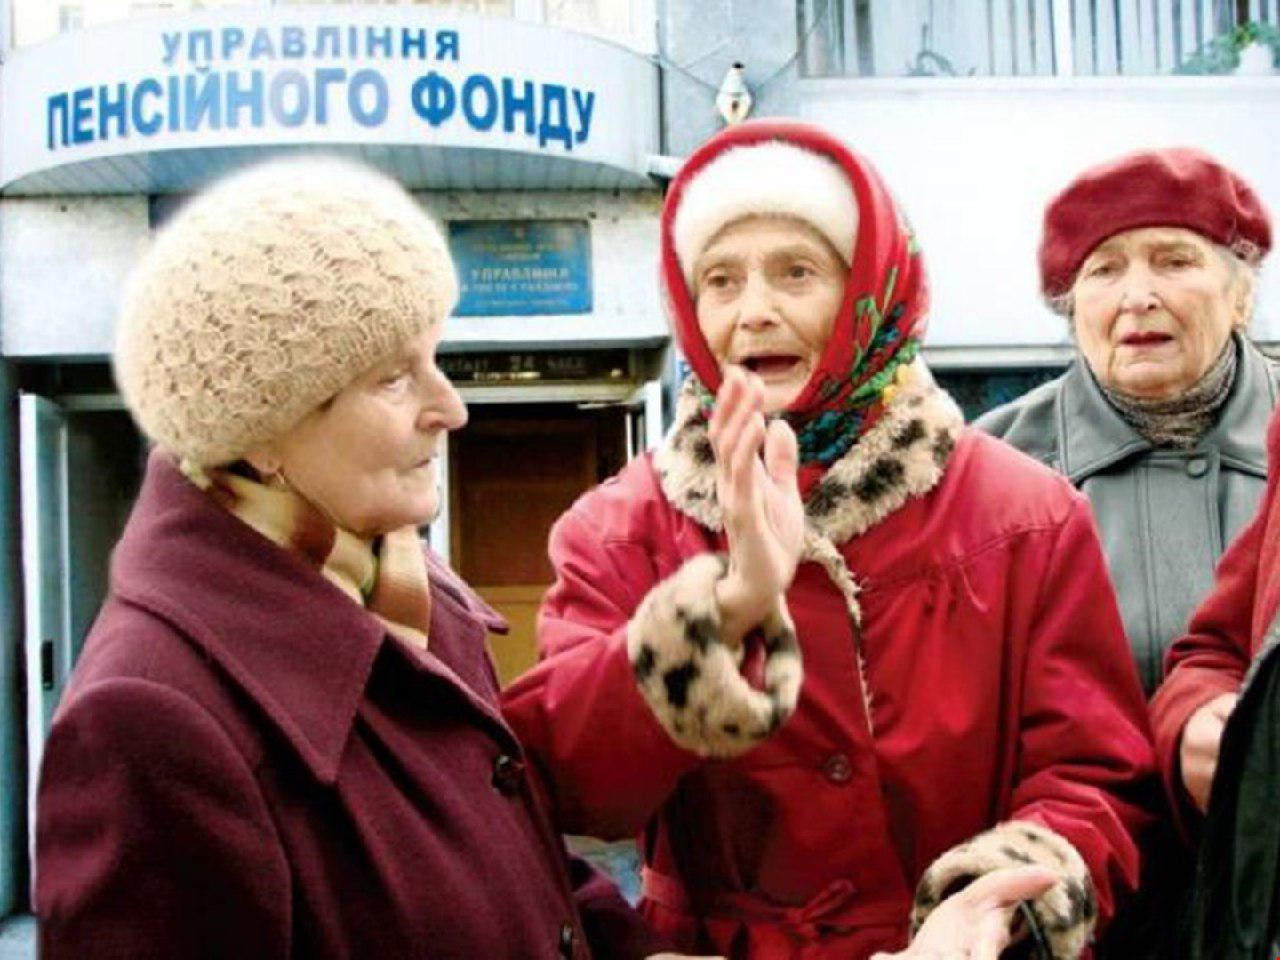 Пенсионная реформа в действии: названа дата начала выплат пересчитанных пенсий украинцам